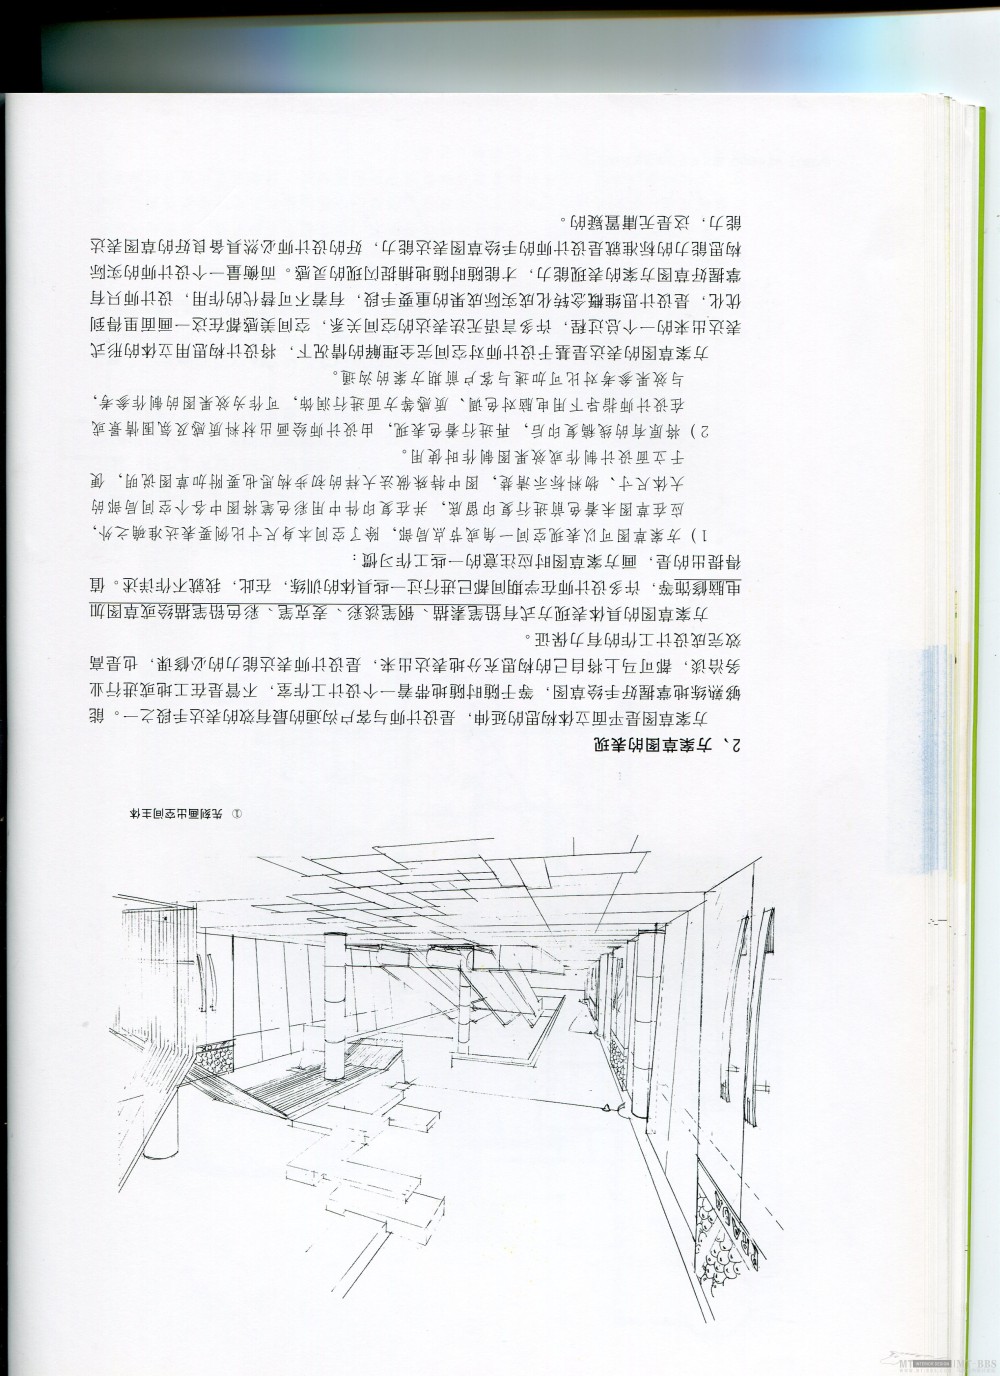 郑成标出的书，关于设计师如何规划项目的.（已完成11－26）_img033.jpg